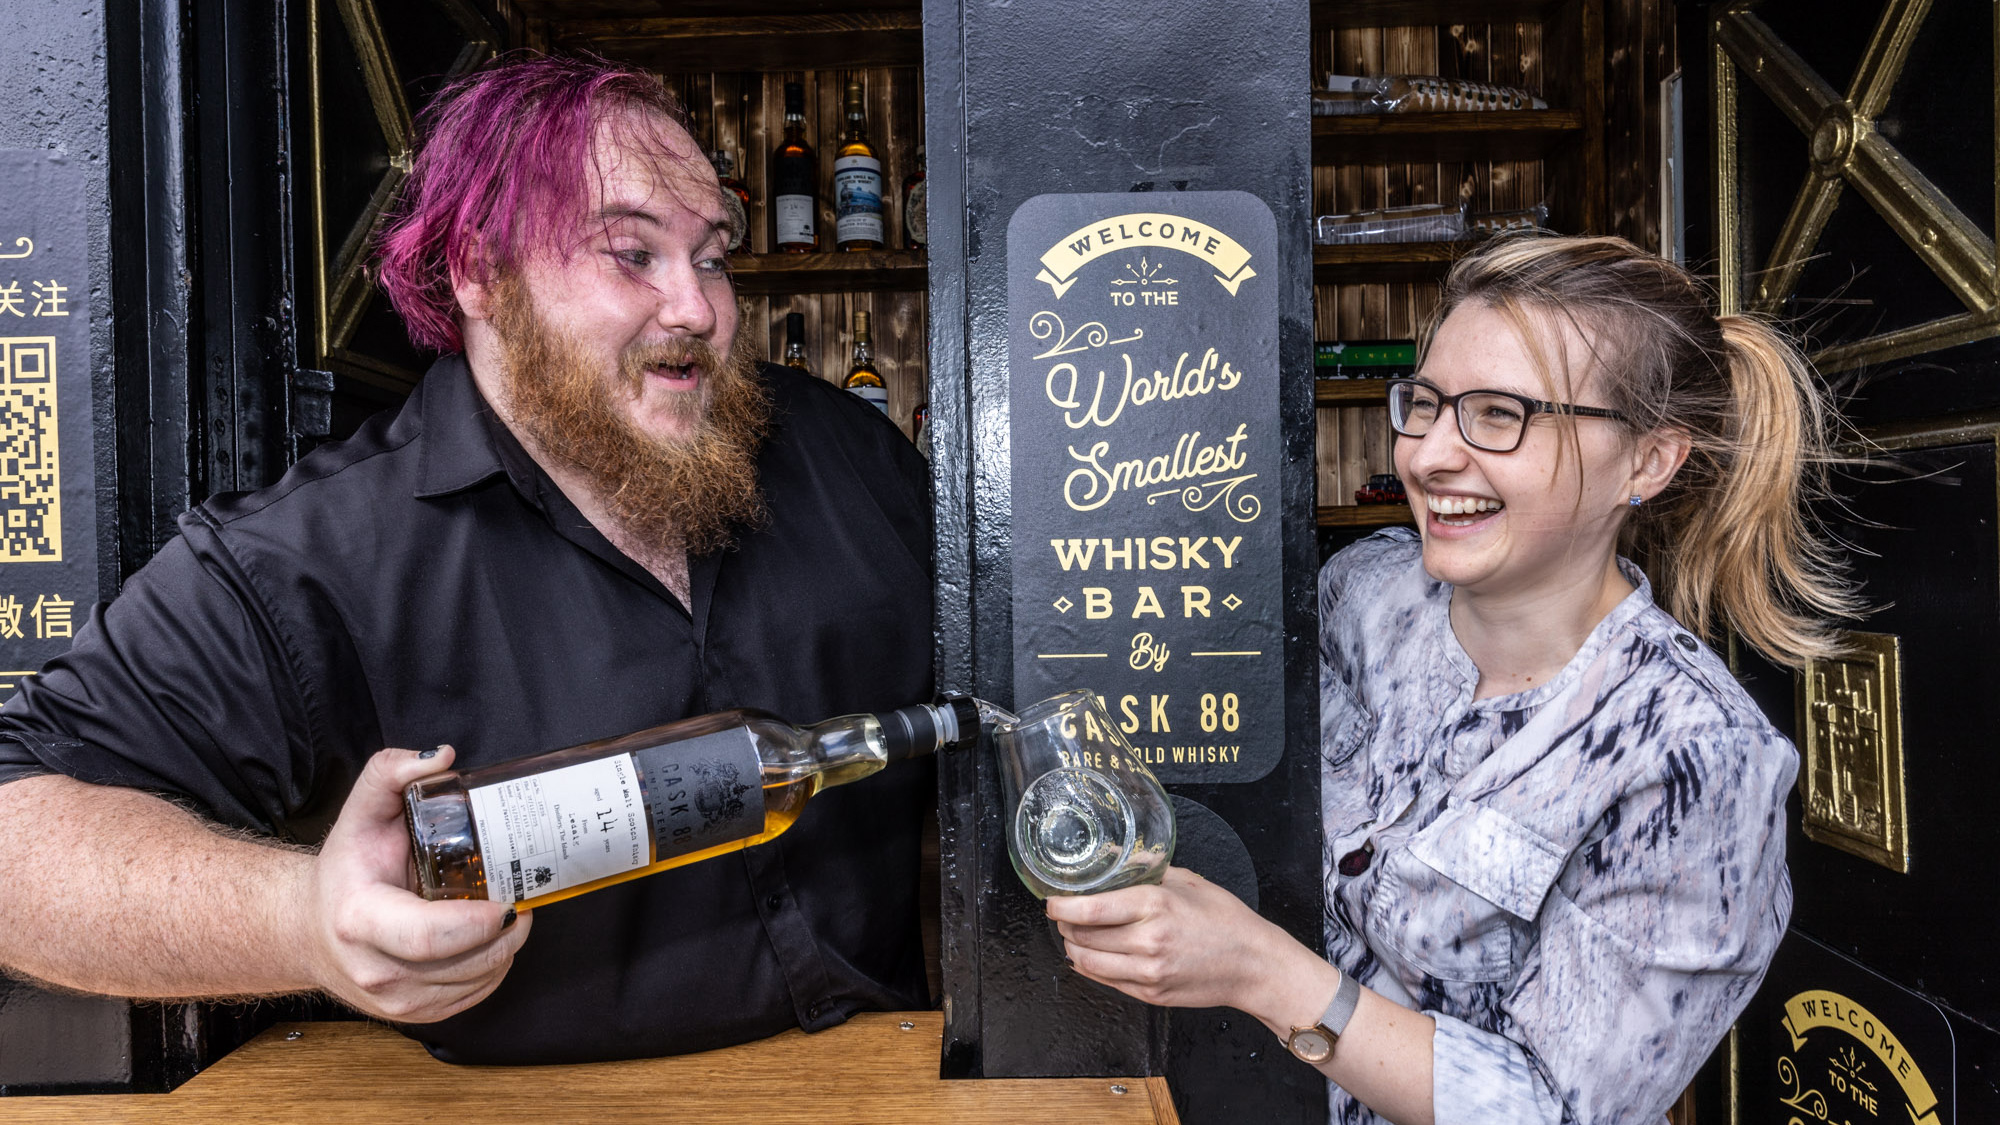 World's Smallest Whisky Bar Edinburgh